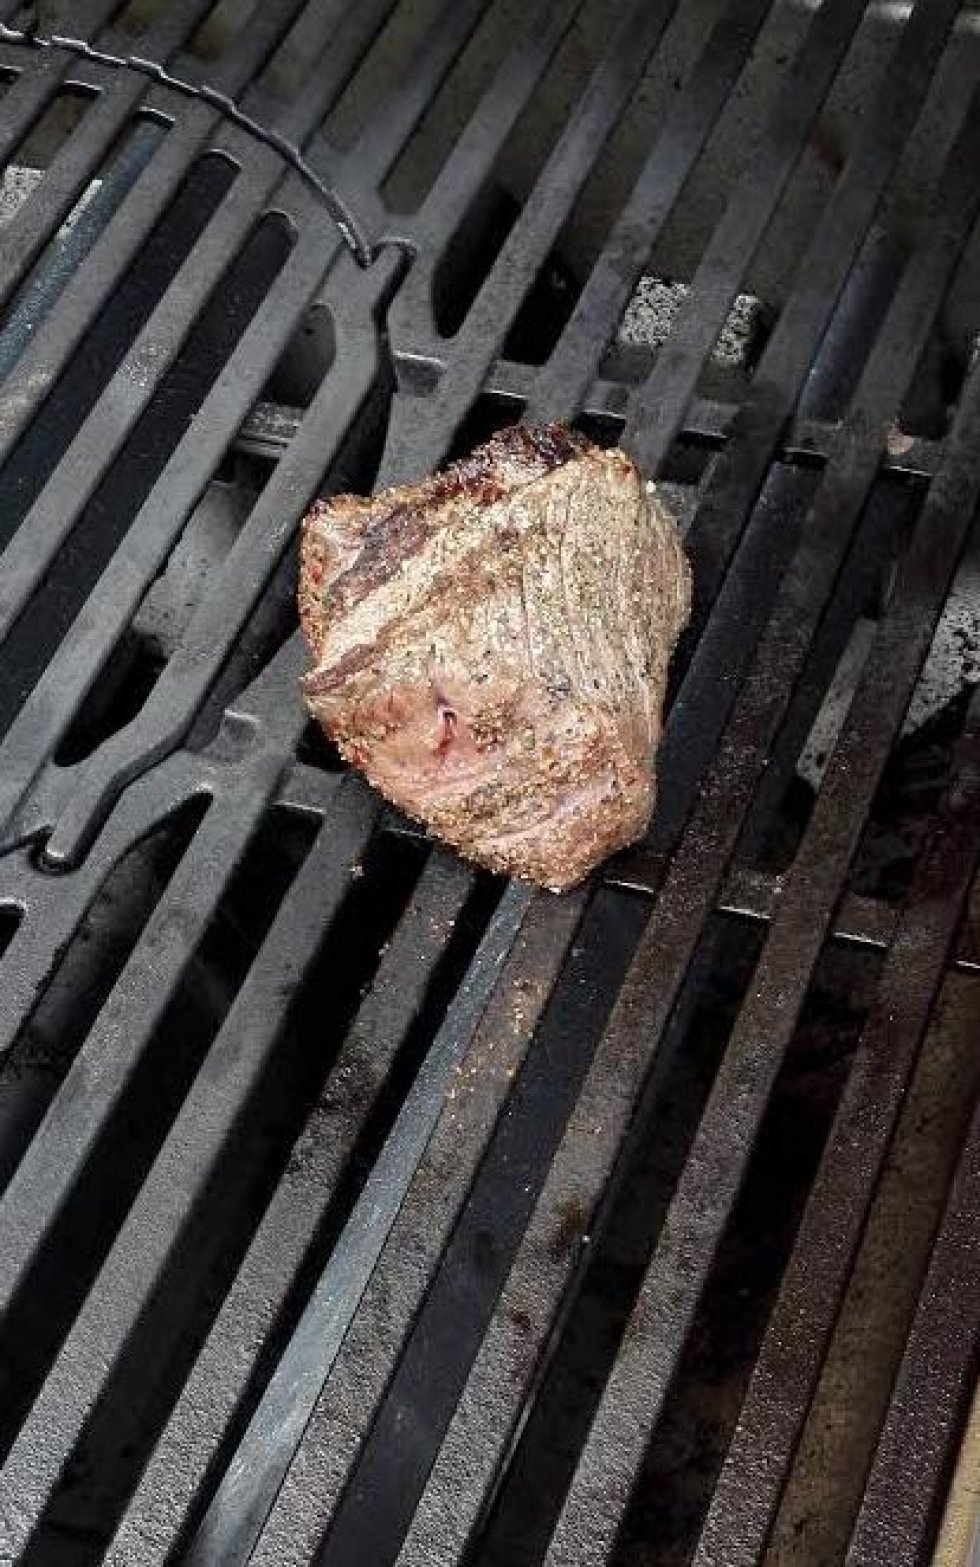 TEST: Steaks til grillen